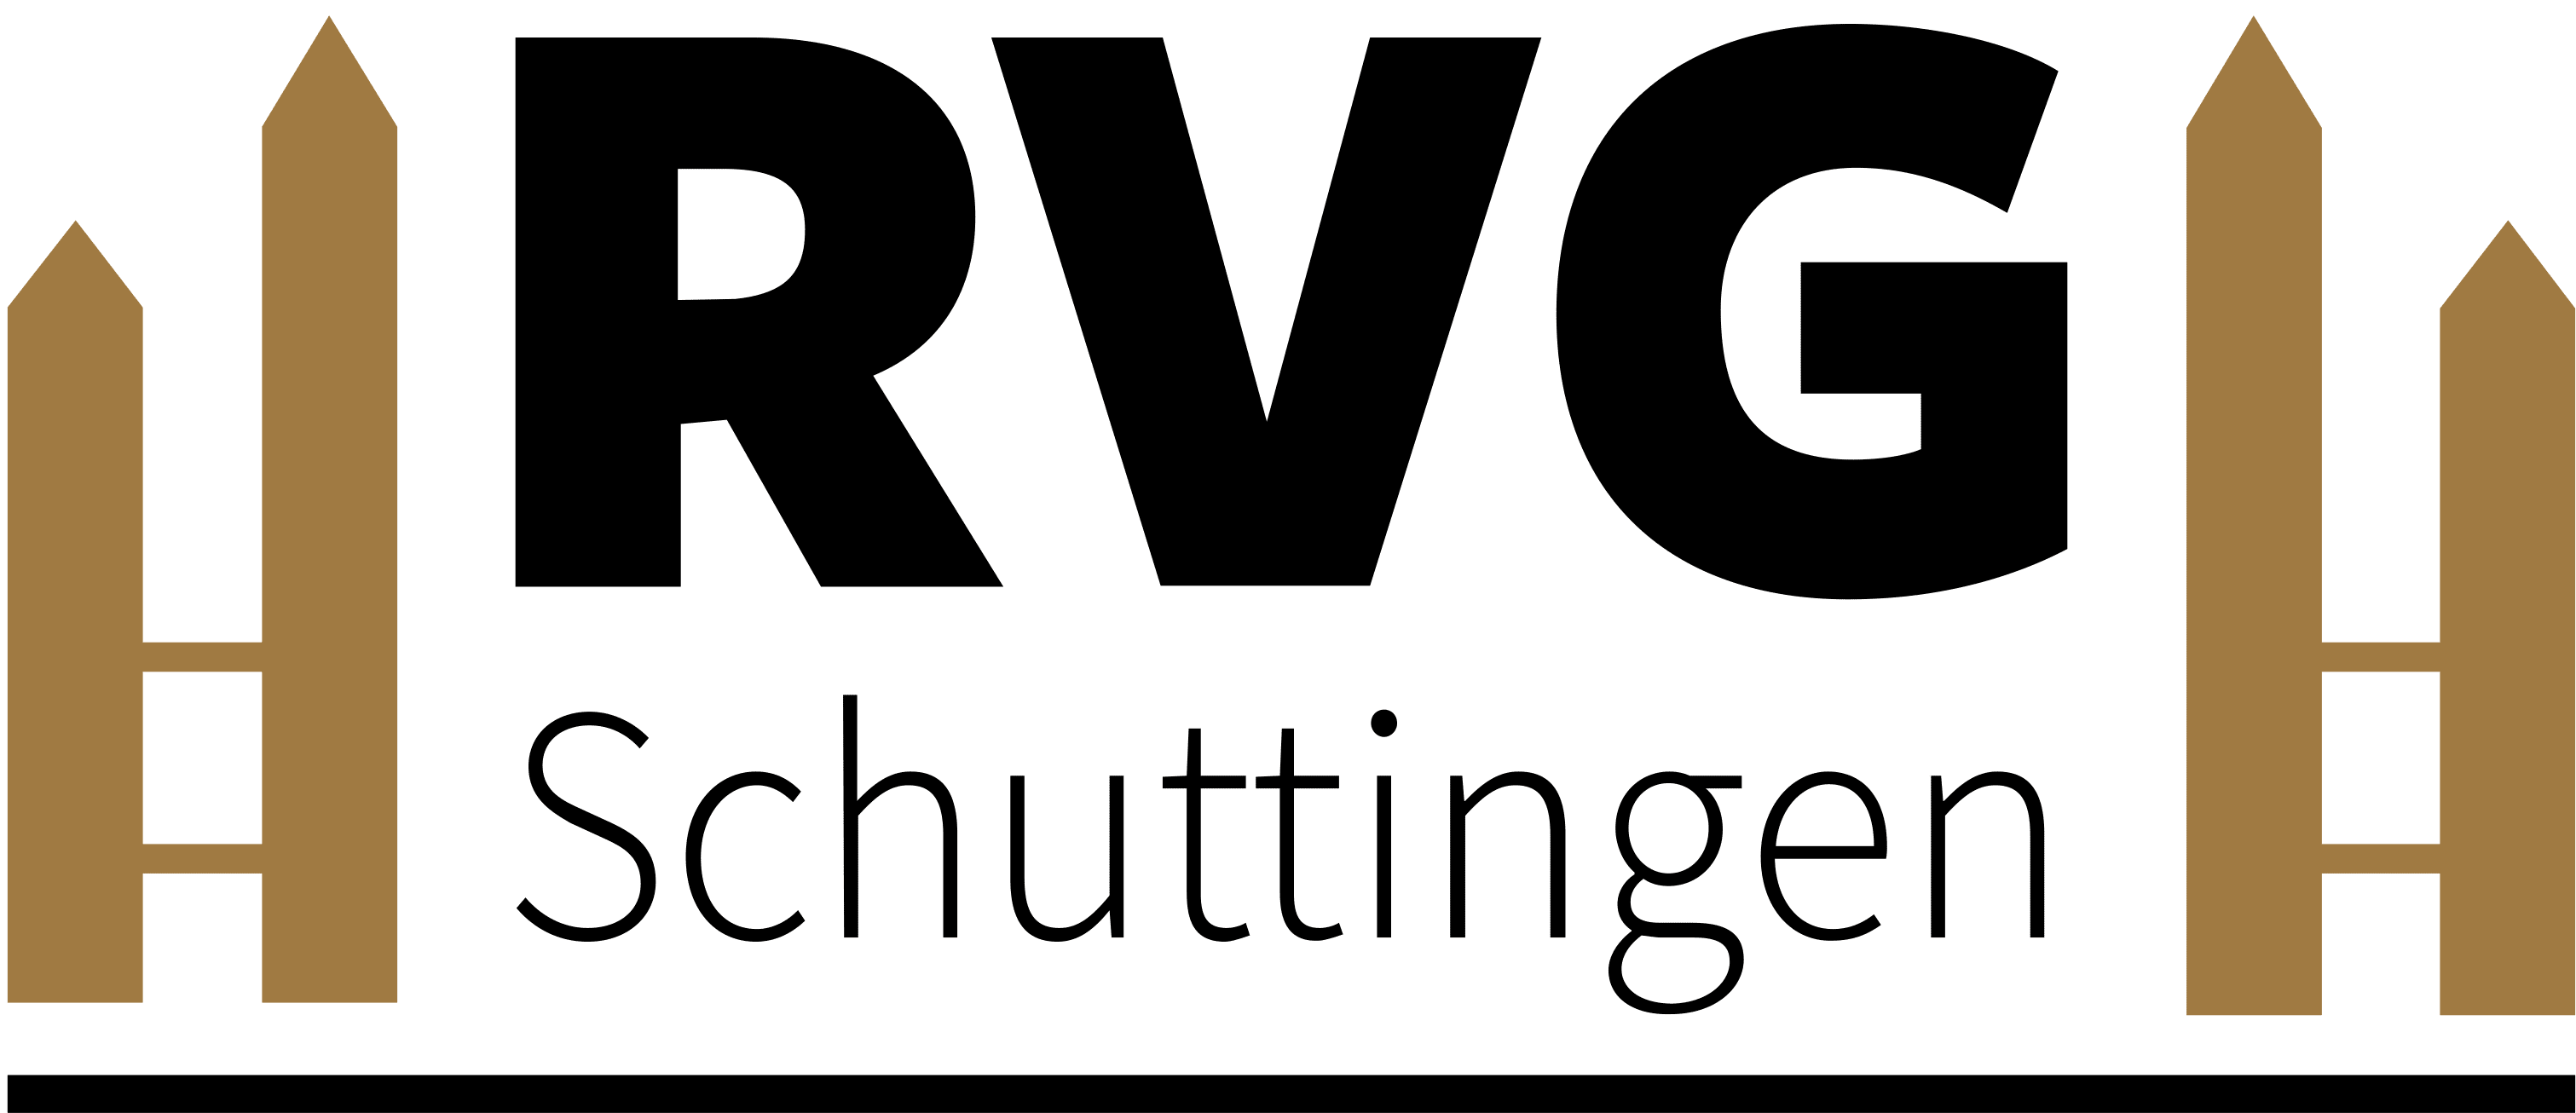 RVG Schuttingen